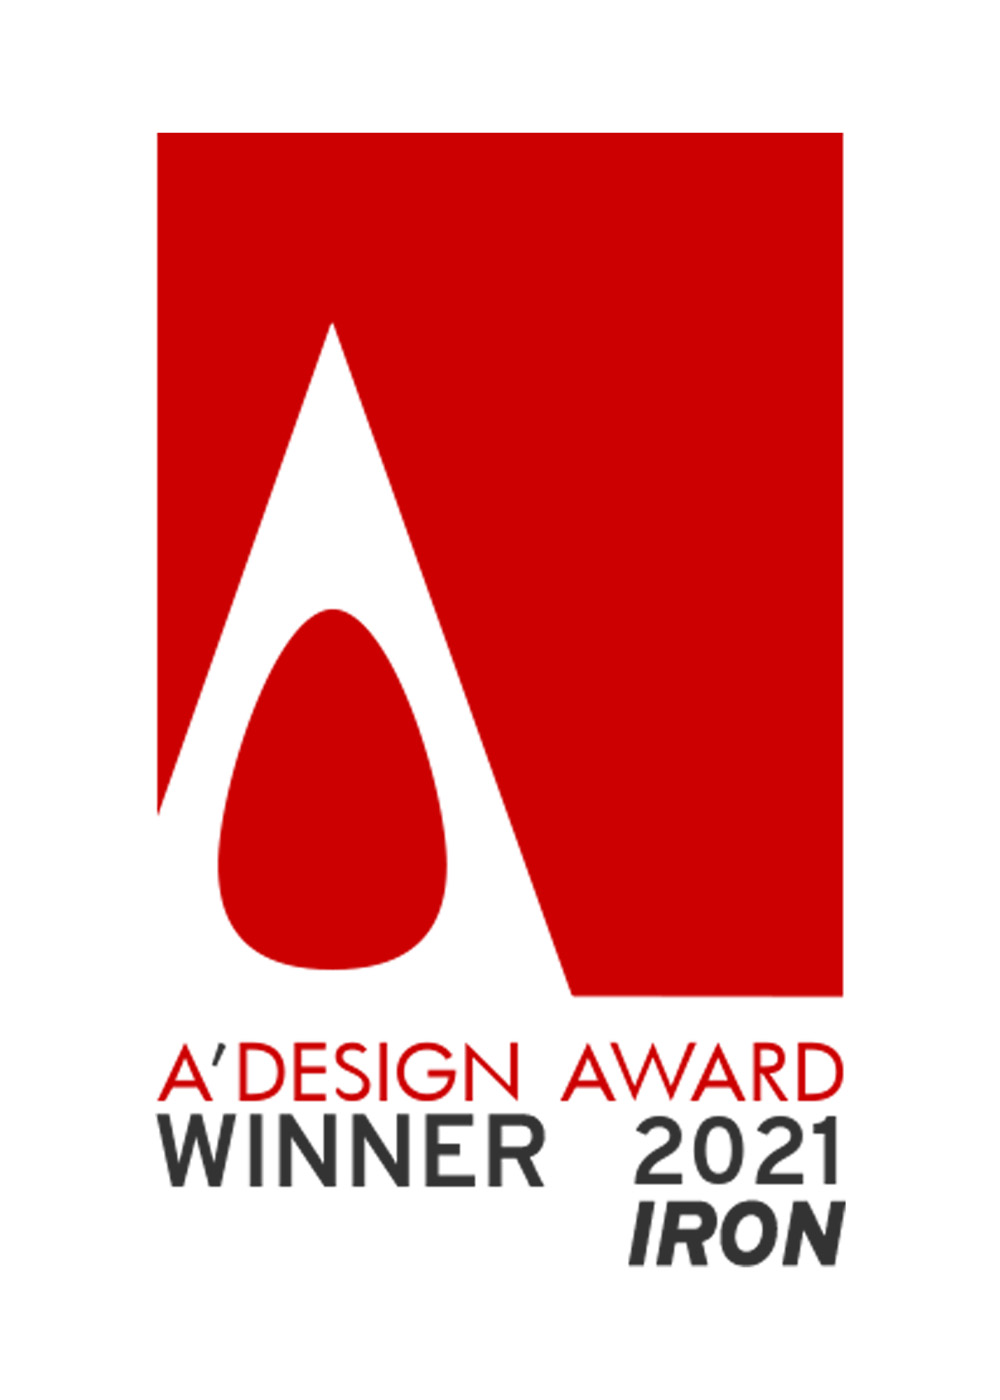 A ‘design award of 2021